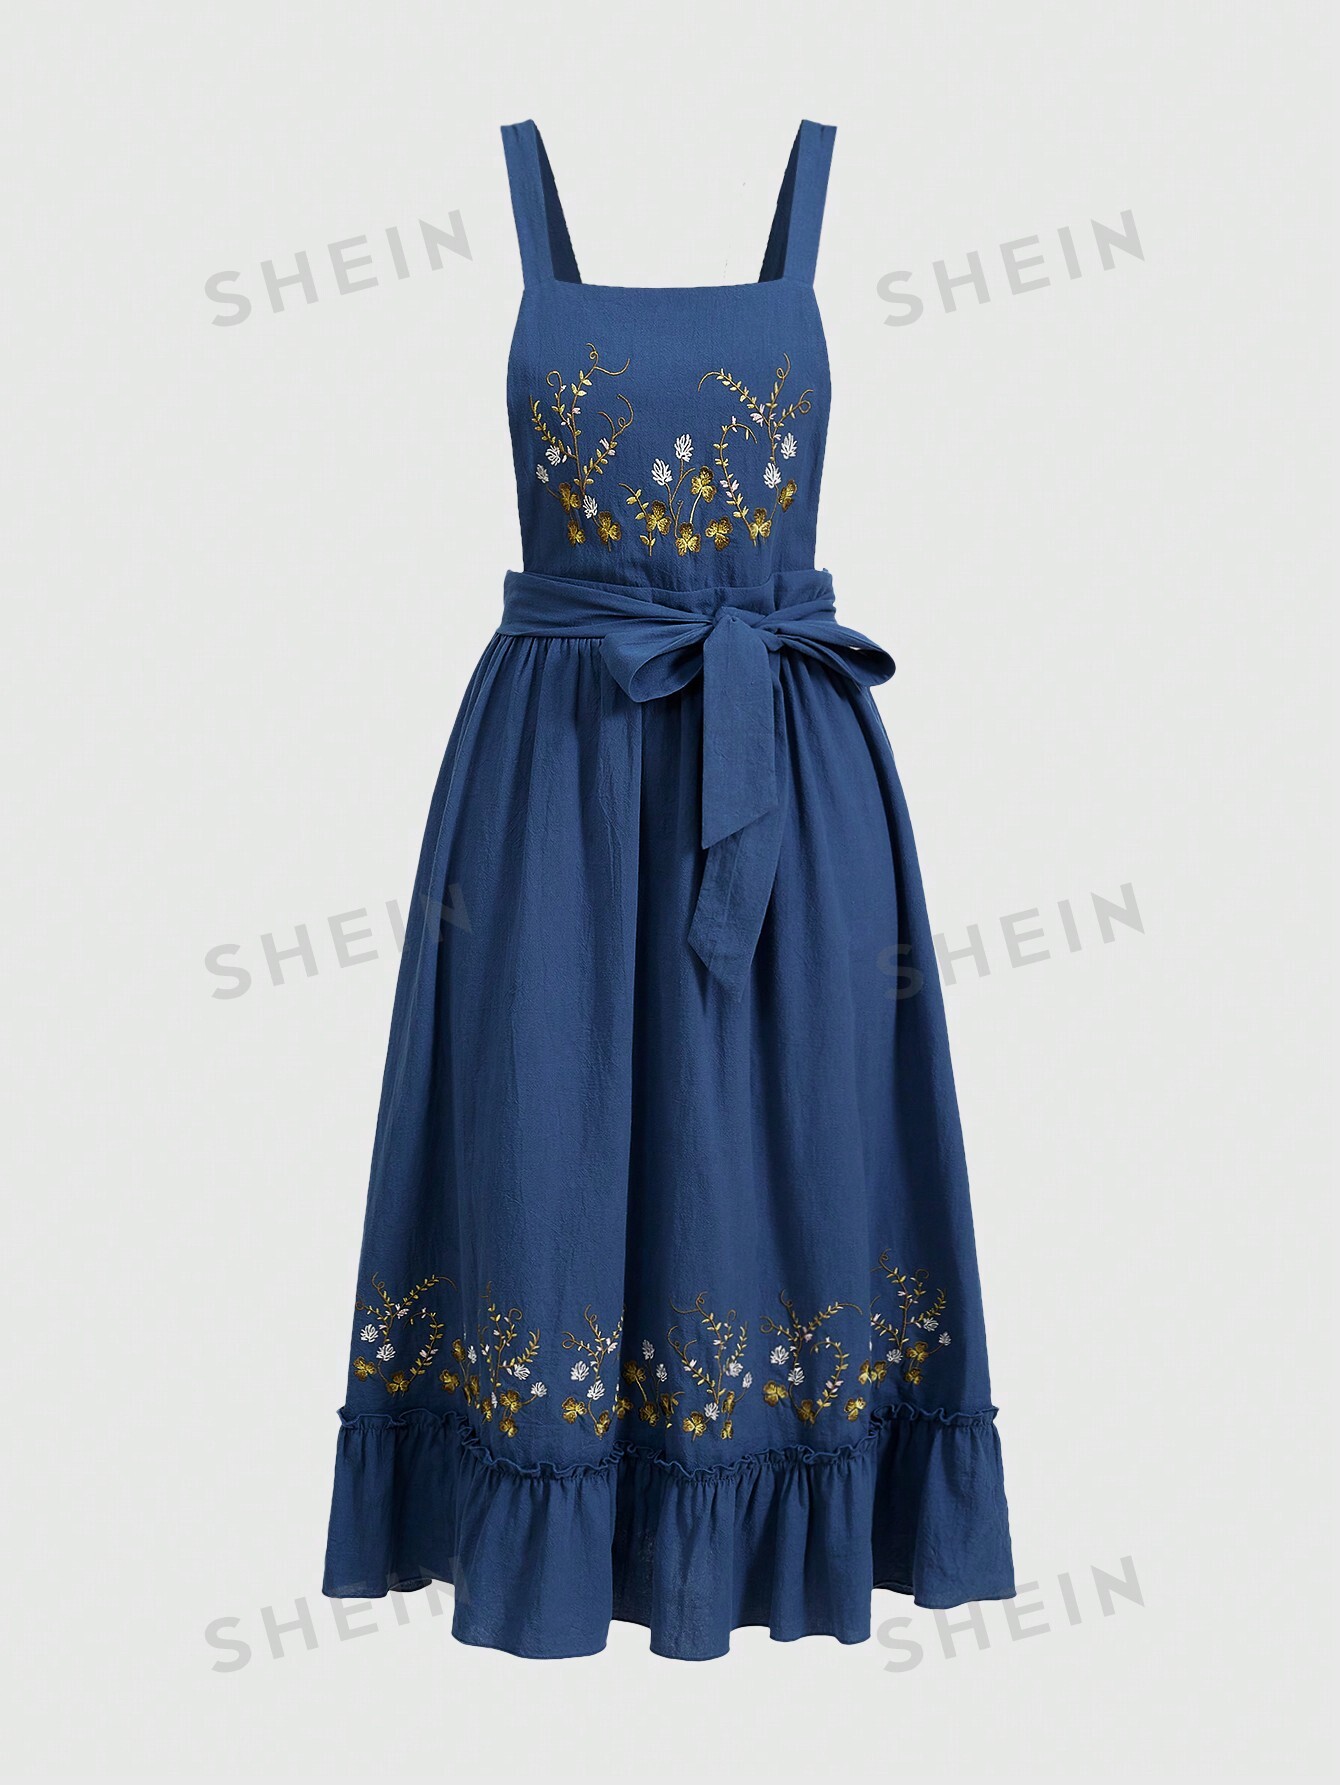 ROMWE Fairycore Женское платье на тонких бретельках с растительной вышивкой, синий